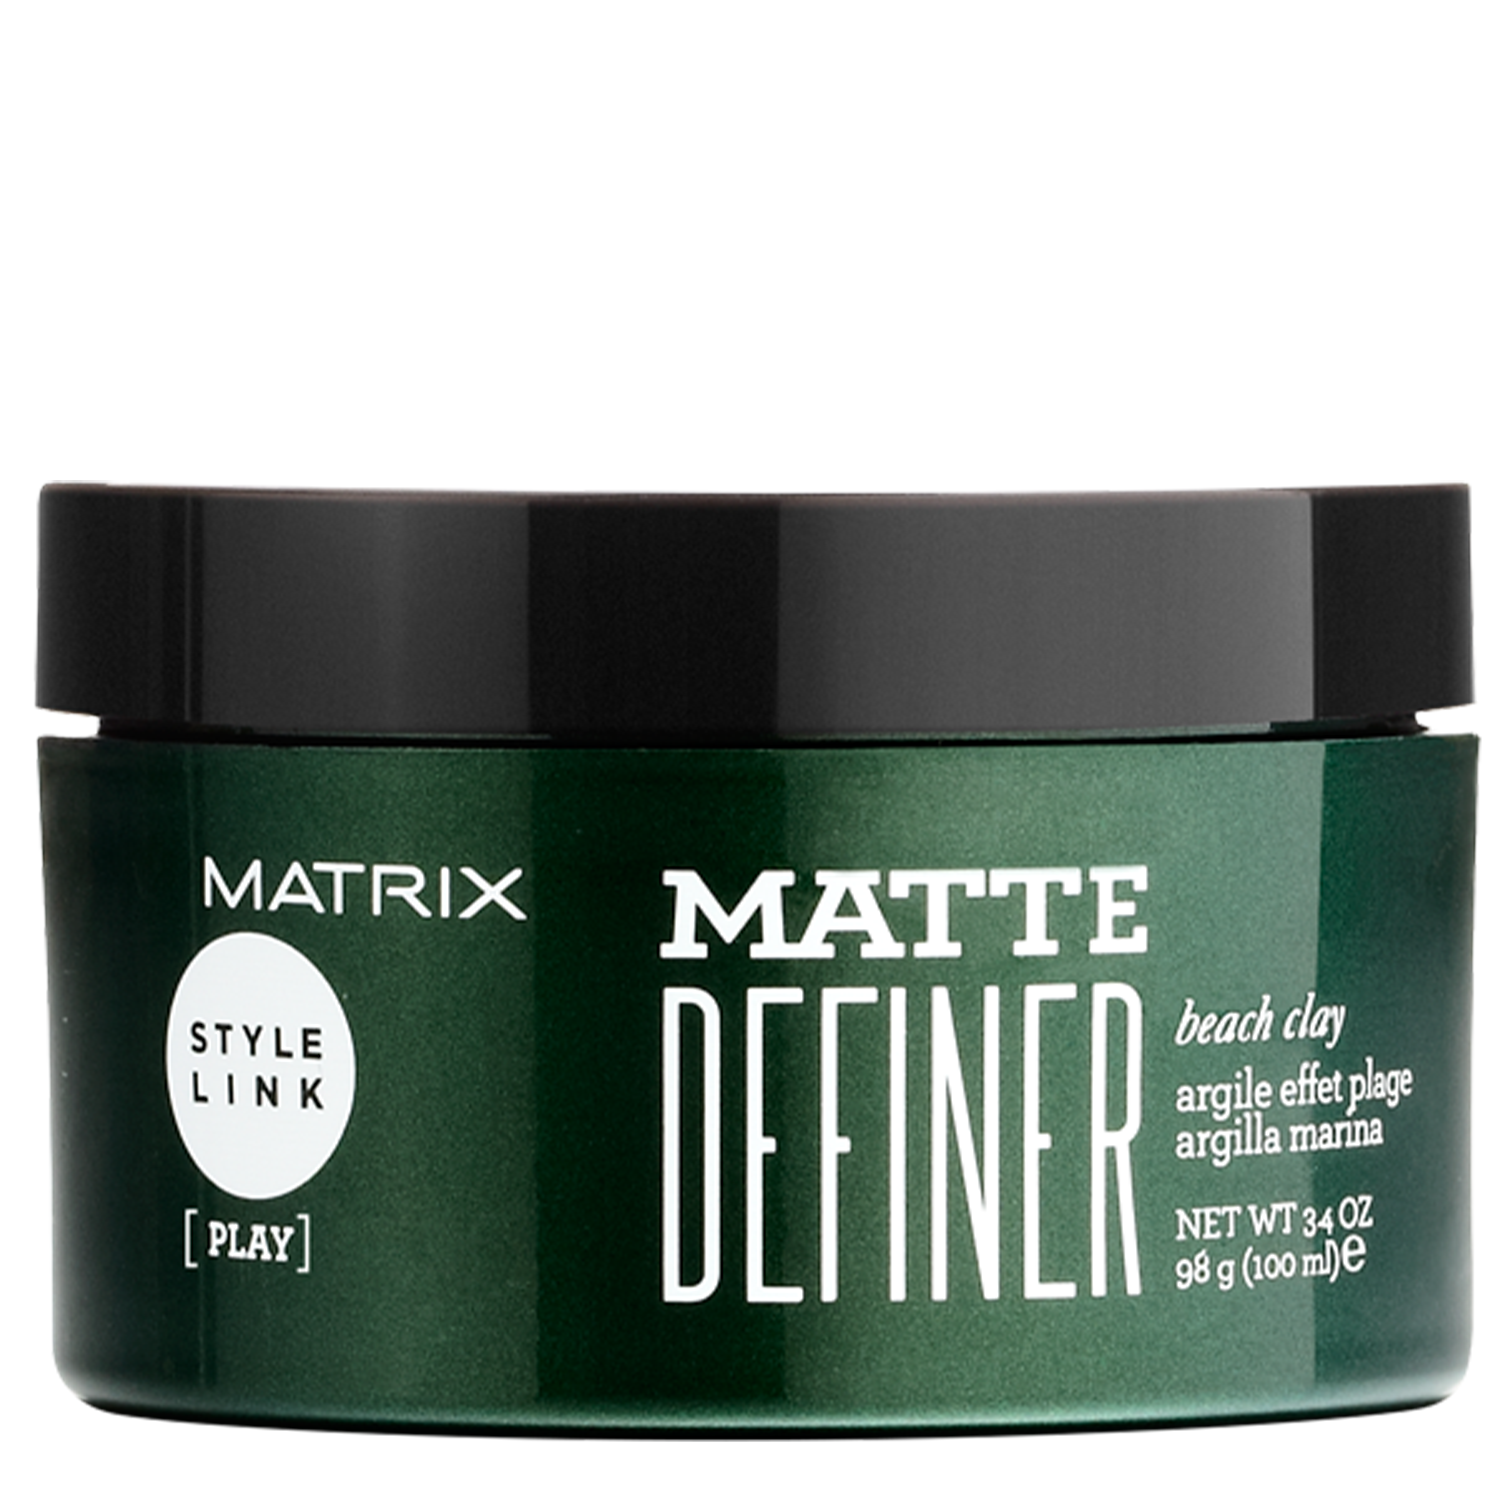 MATRIX STYLE LINK MATTE DEFINER BEACH CLAY 100ML 0963001